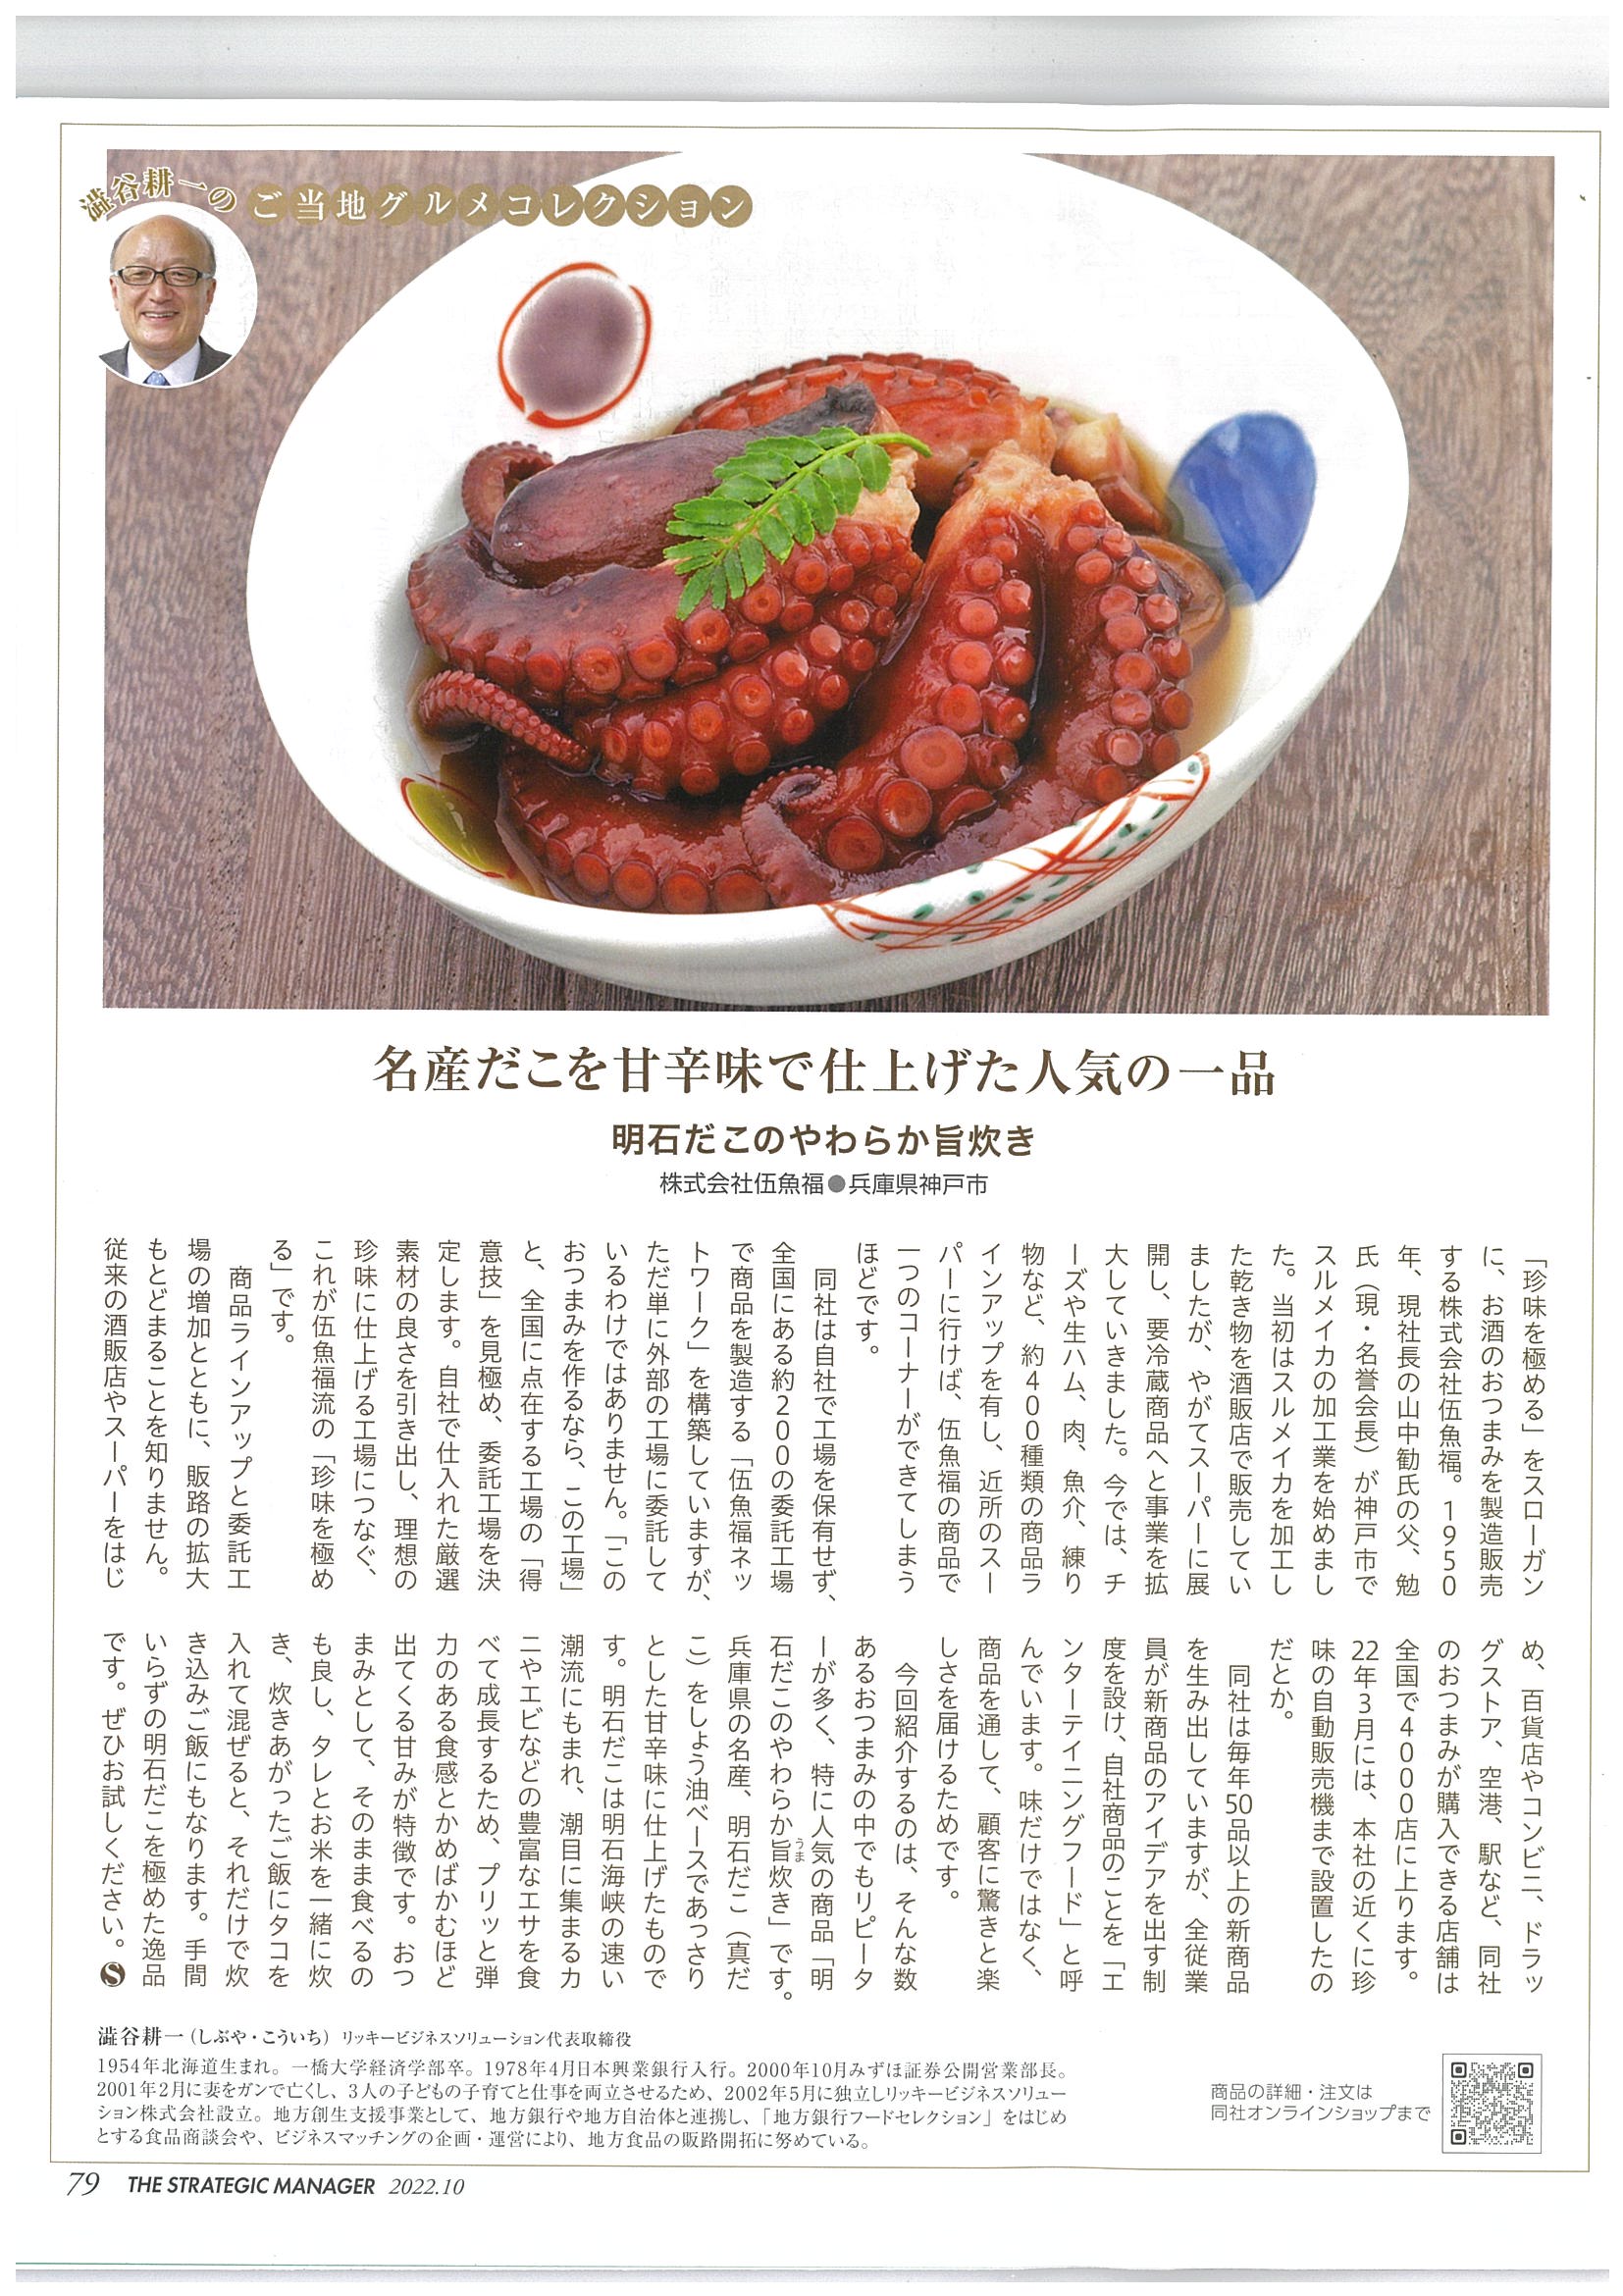 月刊誌「戦略経営者」10月号に「明石だこのやわらか旨炊き」が掲載されました 神戸 伍魚福